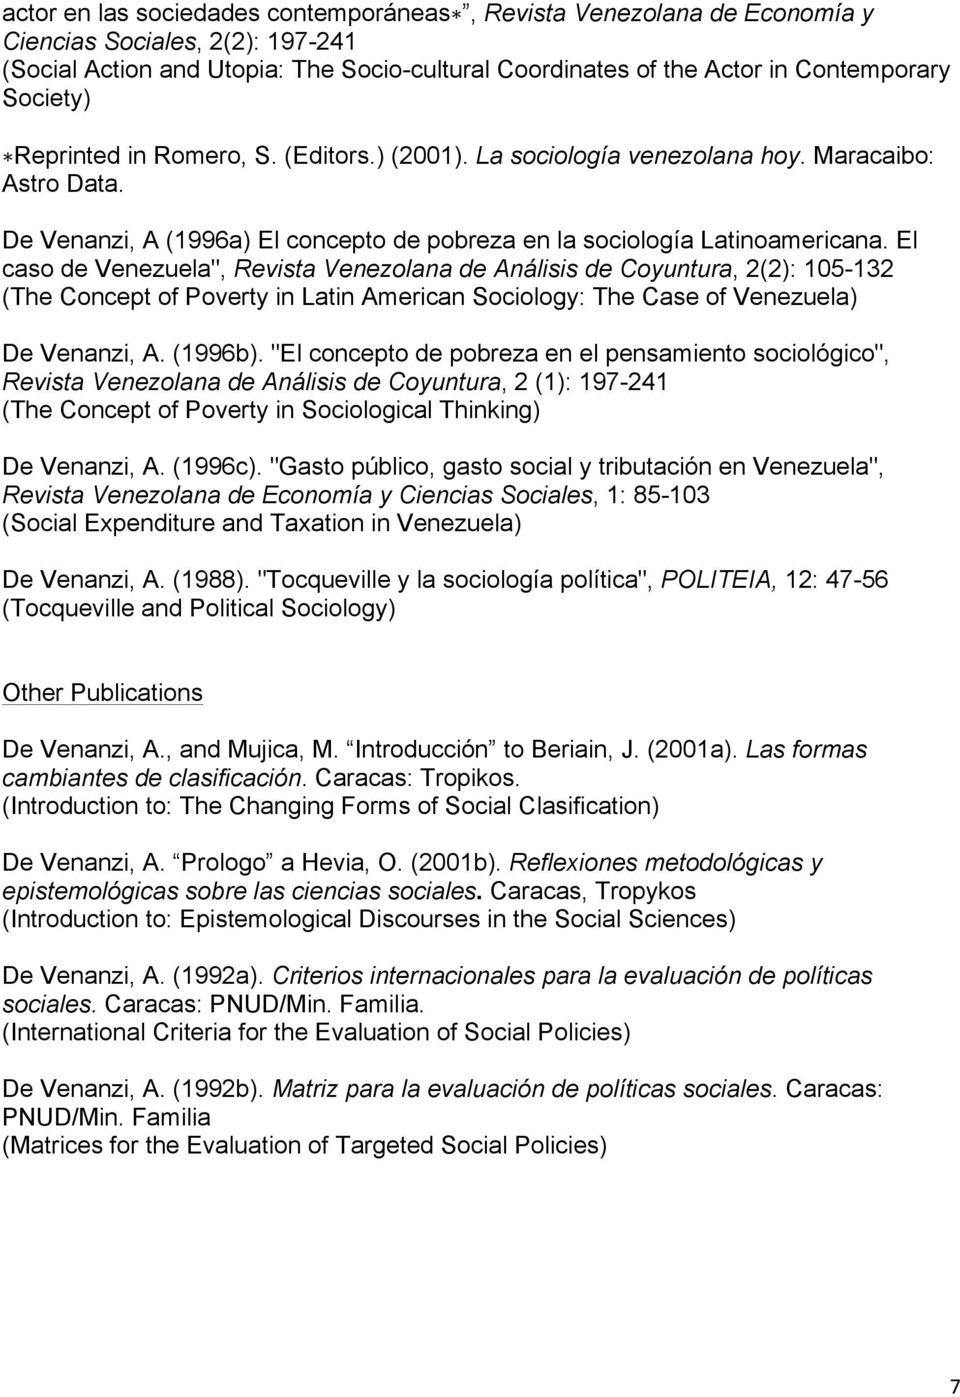 El caso de Venezuela", Revista Venezolana de Análisis de Coyuntura, 2(2): 105-132 (The Concept of Poverty in Latin American Sociology: The Case of Venezuela) De Venanzi, A. (1996b).